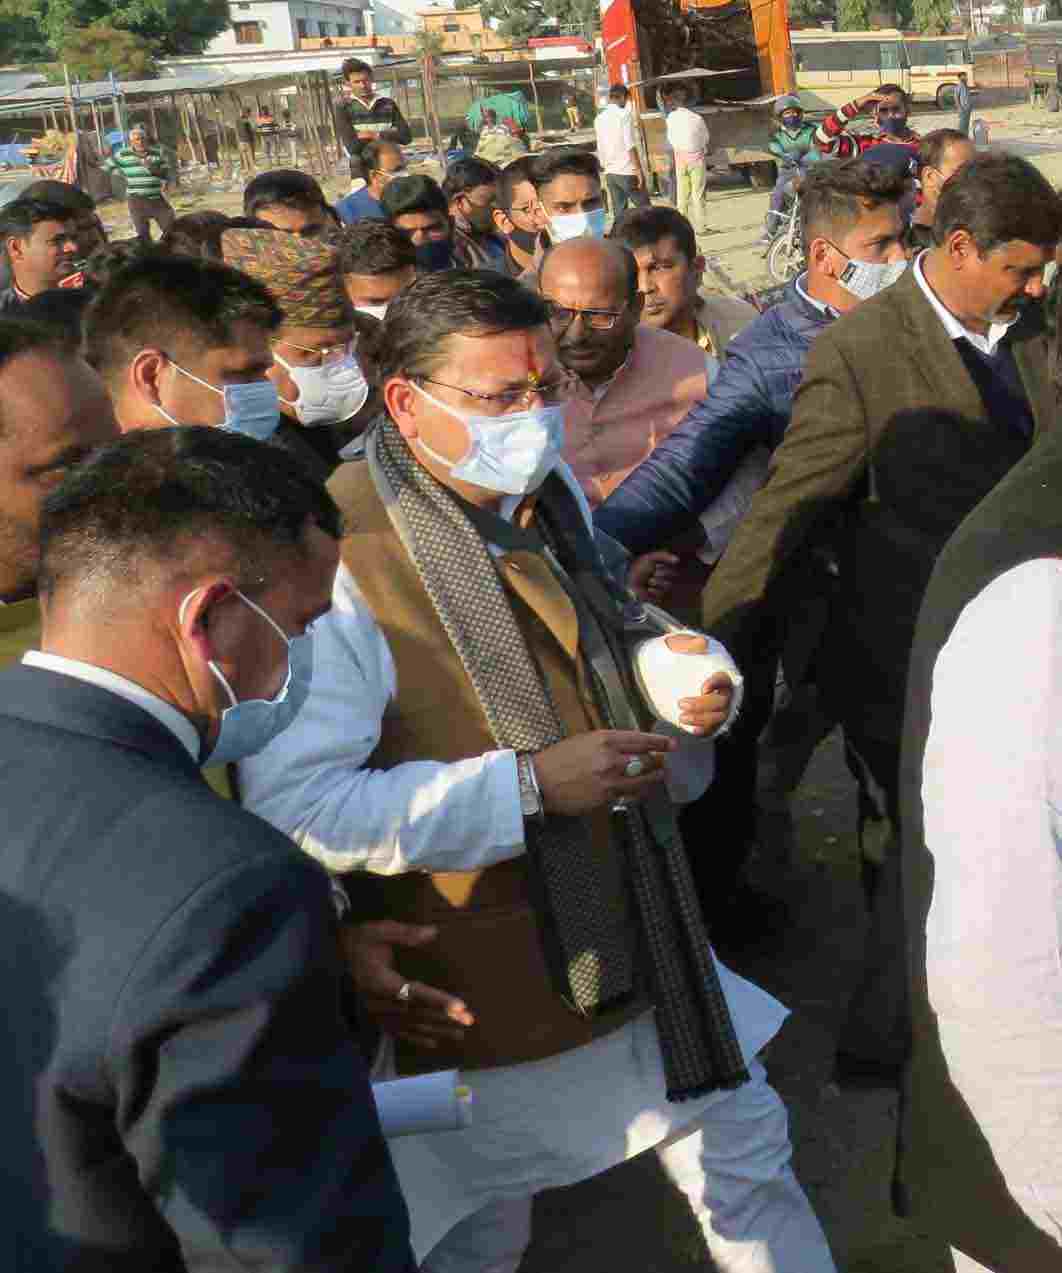 प्रधानमंत्री नरेन्द्र मोदी के आगामी 30 दिसम्बर को प्रस्तावित हल्द्वानी भ्रमण के मद्देनजर मुख्यमंत्री पुष्कर सिंह धामी ने मत्रियों व अधिकारियों संग व्यवस्थाओं का लिया जायजा, सभी व्यवस्थायें समय पर पूर्ण करने के दिए निर्देश 3 Hello Uttarakhand News »